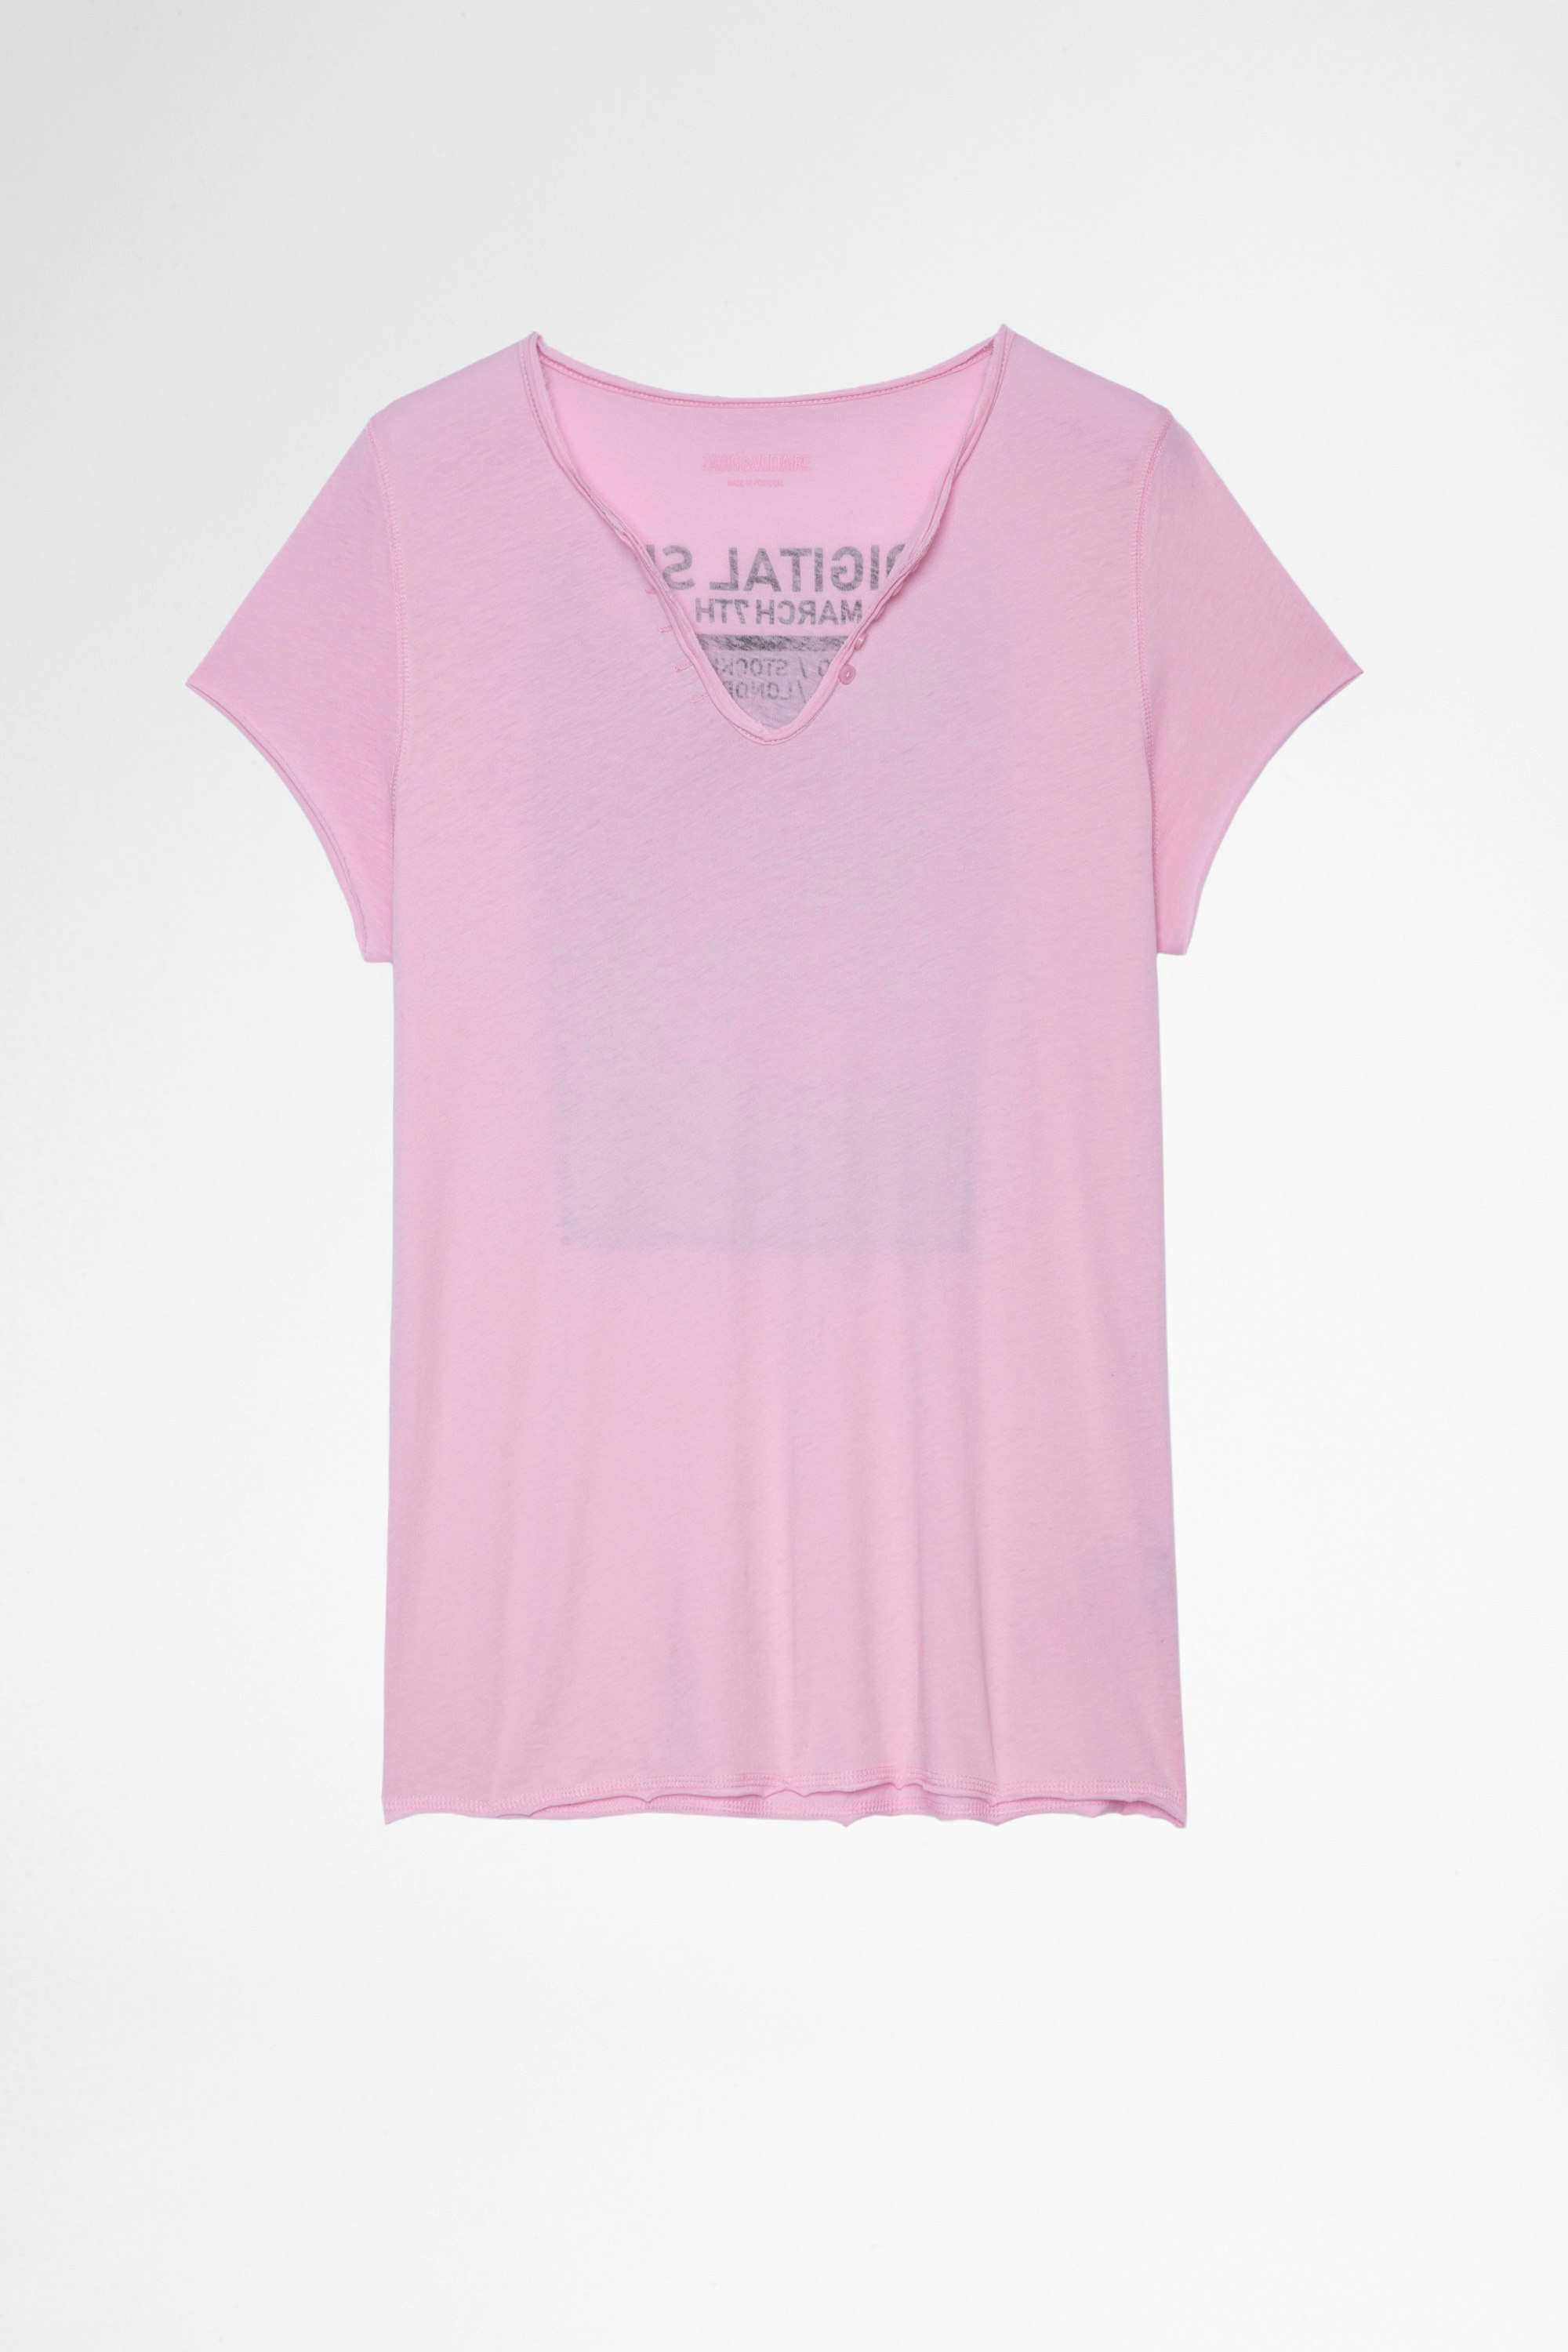 T-shirt mit Henley-Ausschnitt Photoprint Damen-T-shirt mit Henley-Ausschnitt aus rosafarbener Baumwolle, mit Fotoprint hinten. Hergestellt mit Fasern aus biologischem Anbau